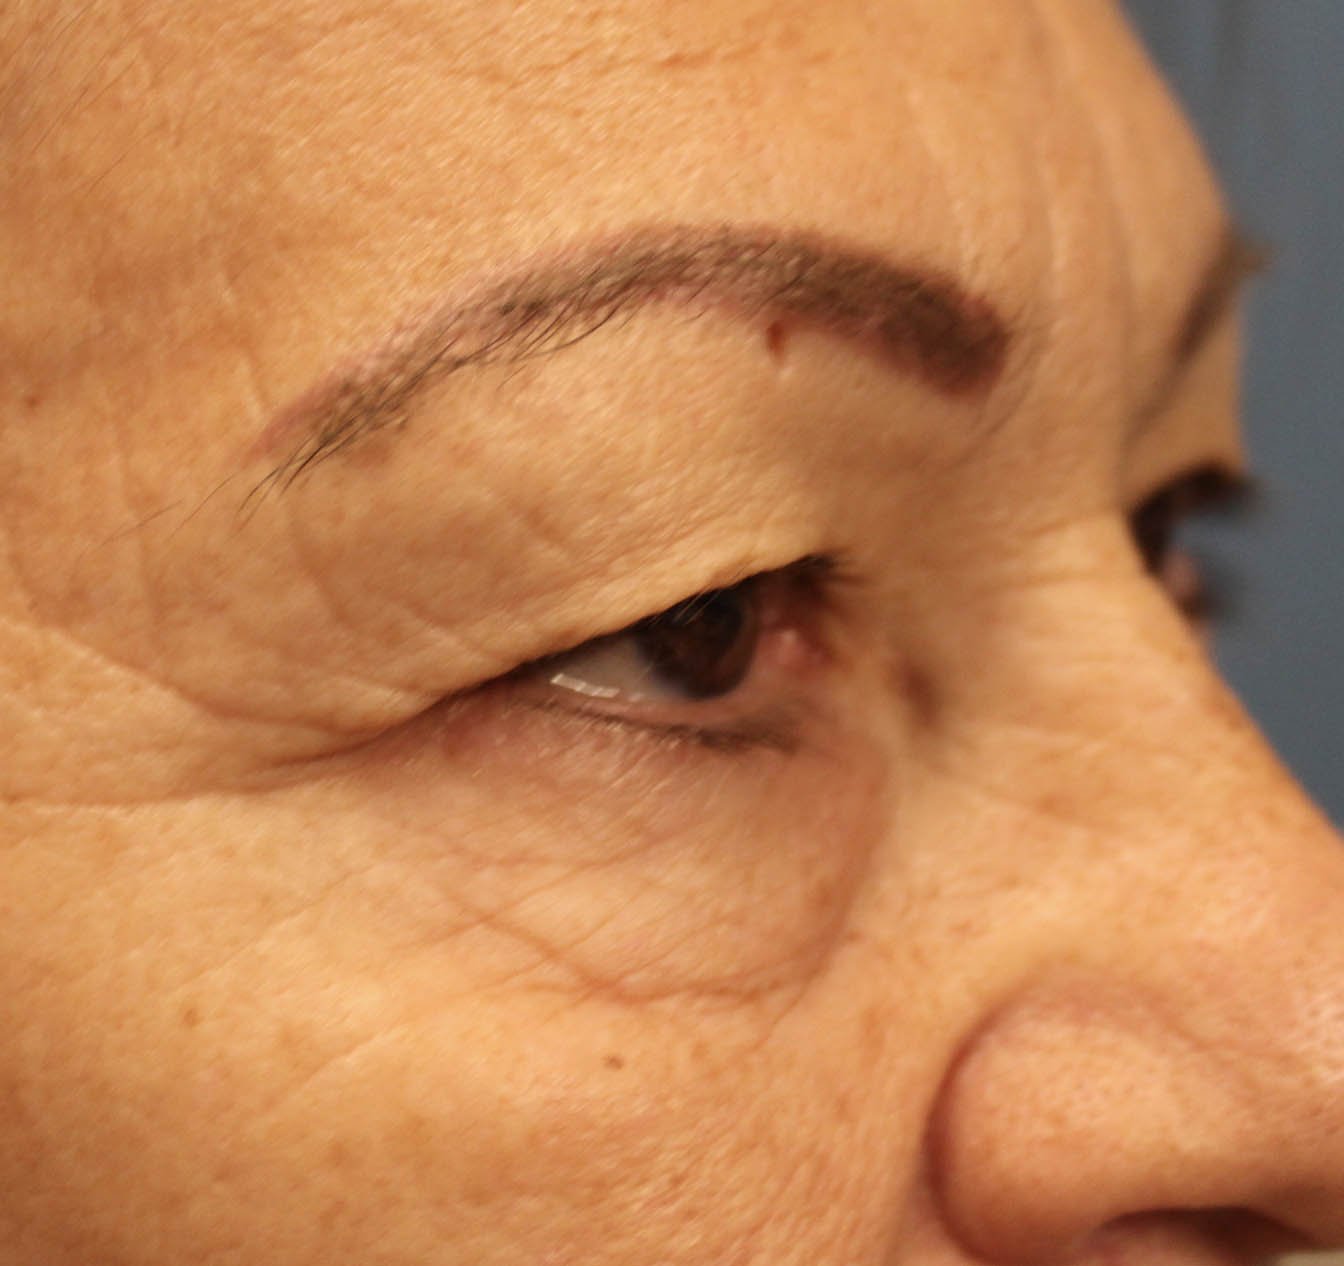 left eye 70 year old female before blepharoplasty surgery